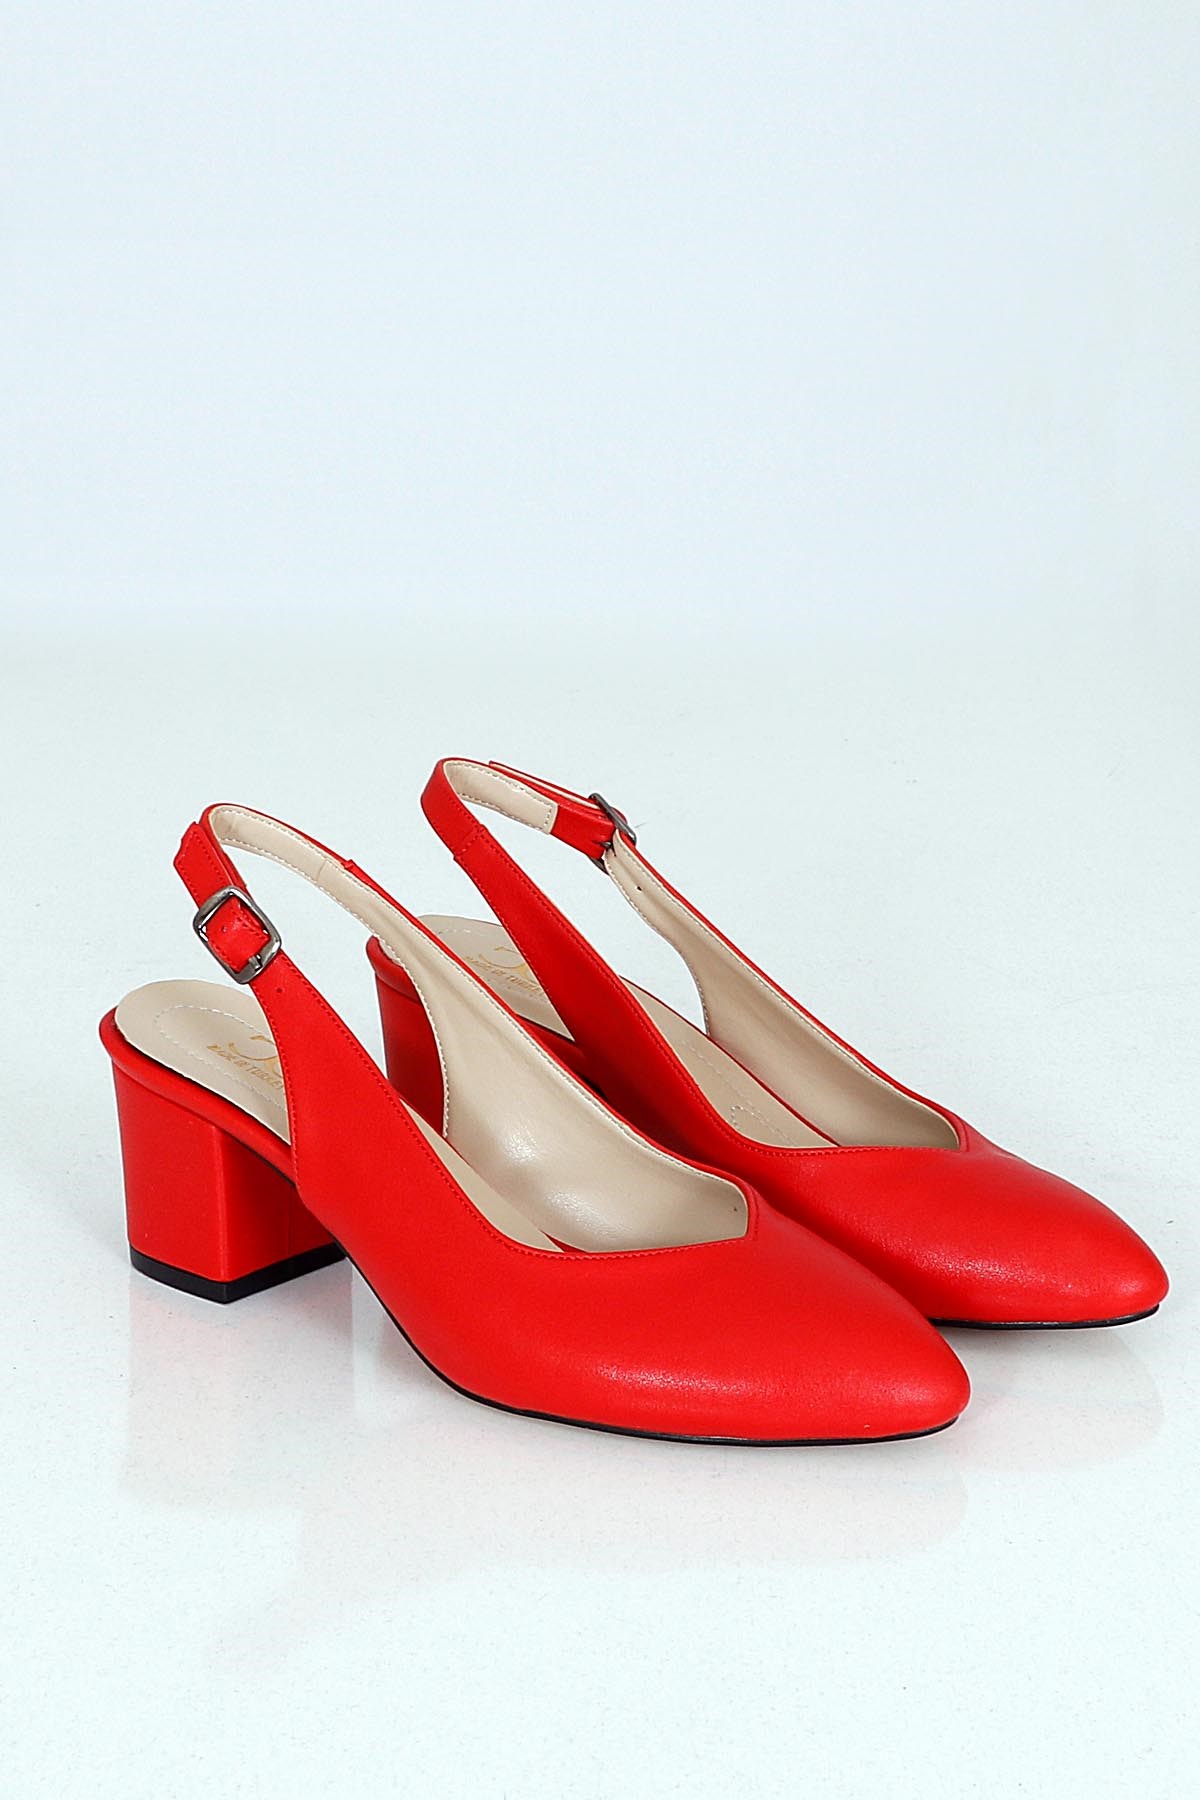 Kırmızı Kalın Topuklu Arkası Açık Ayakkabı MR120 Fiyatı ve Modelleri